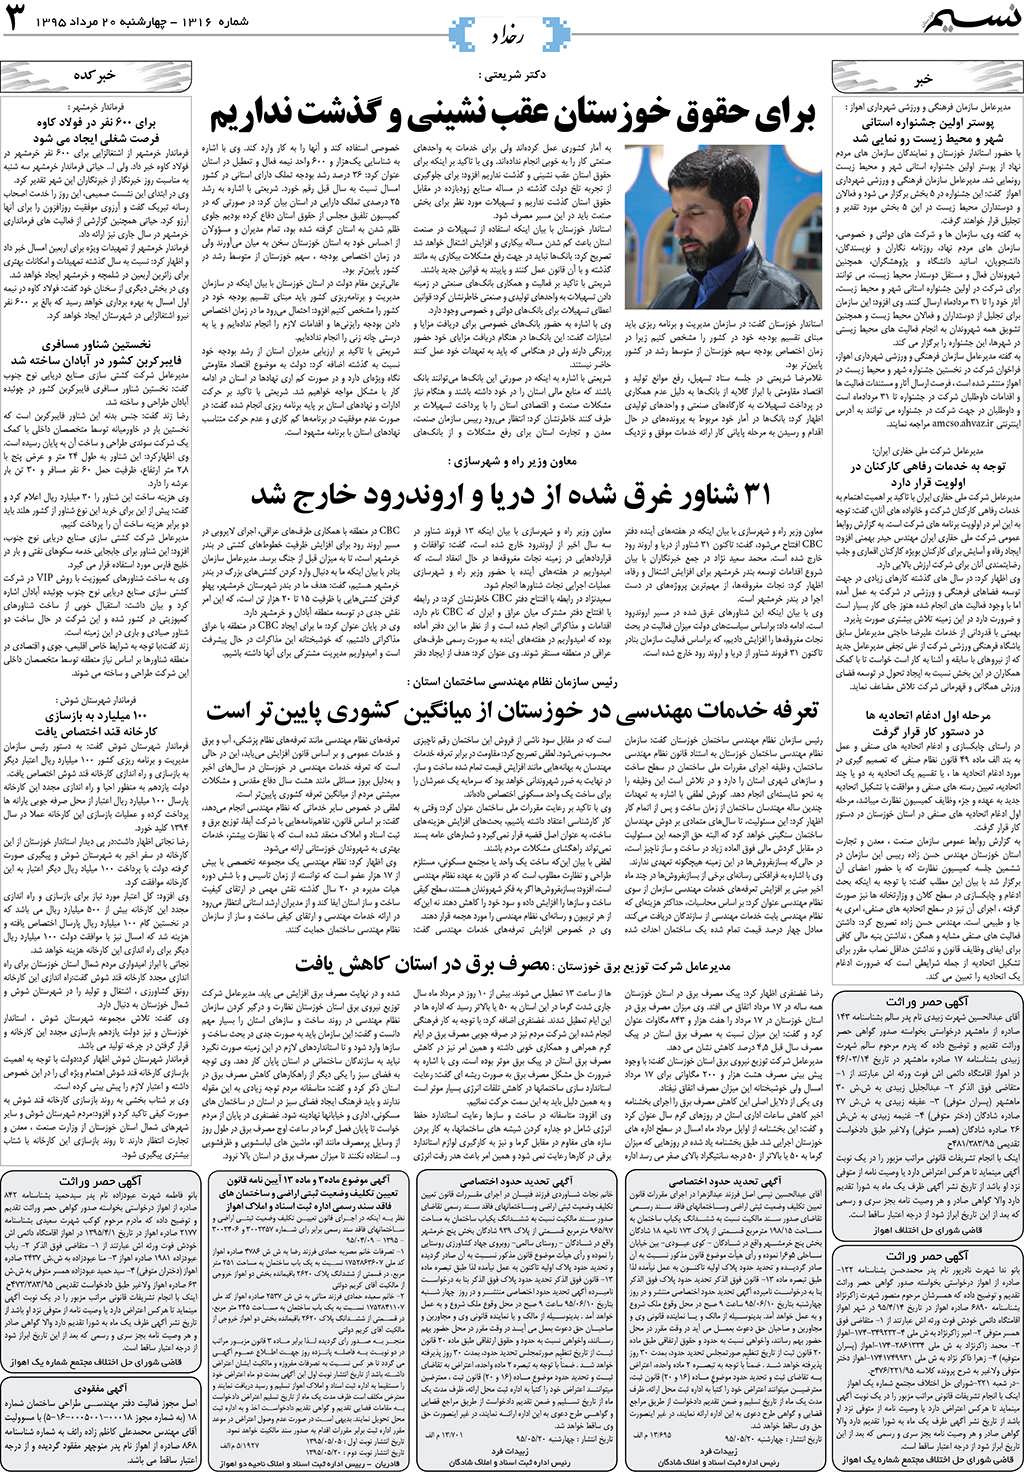 صفحه رخداد روزنامه نسیم شماره 1316